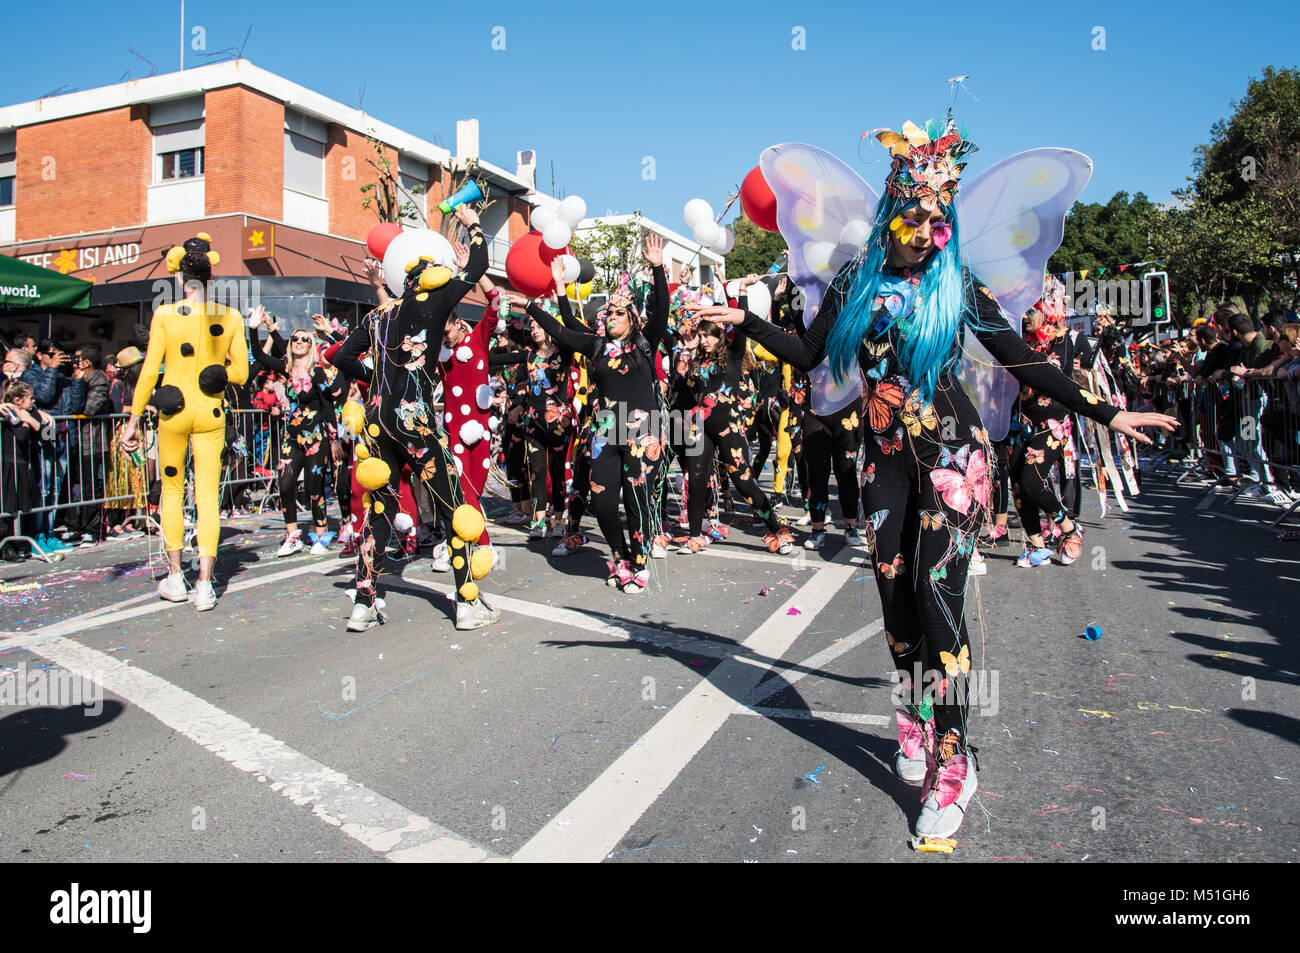 Limassol, Cipro - 18 Febbraio 2018: Happy team di persone vestite con abiti colorati godendo la famosa sfilata di Carnevale nella città di Limassol, Cipro Foto Stock